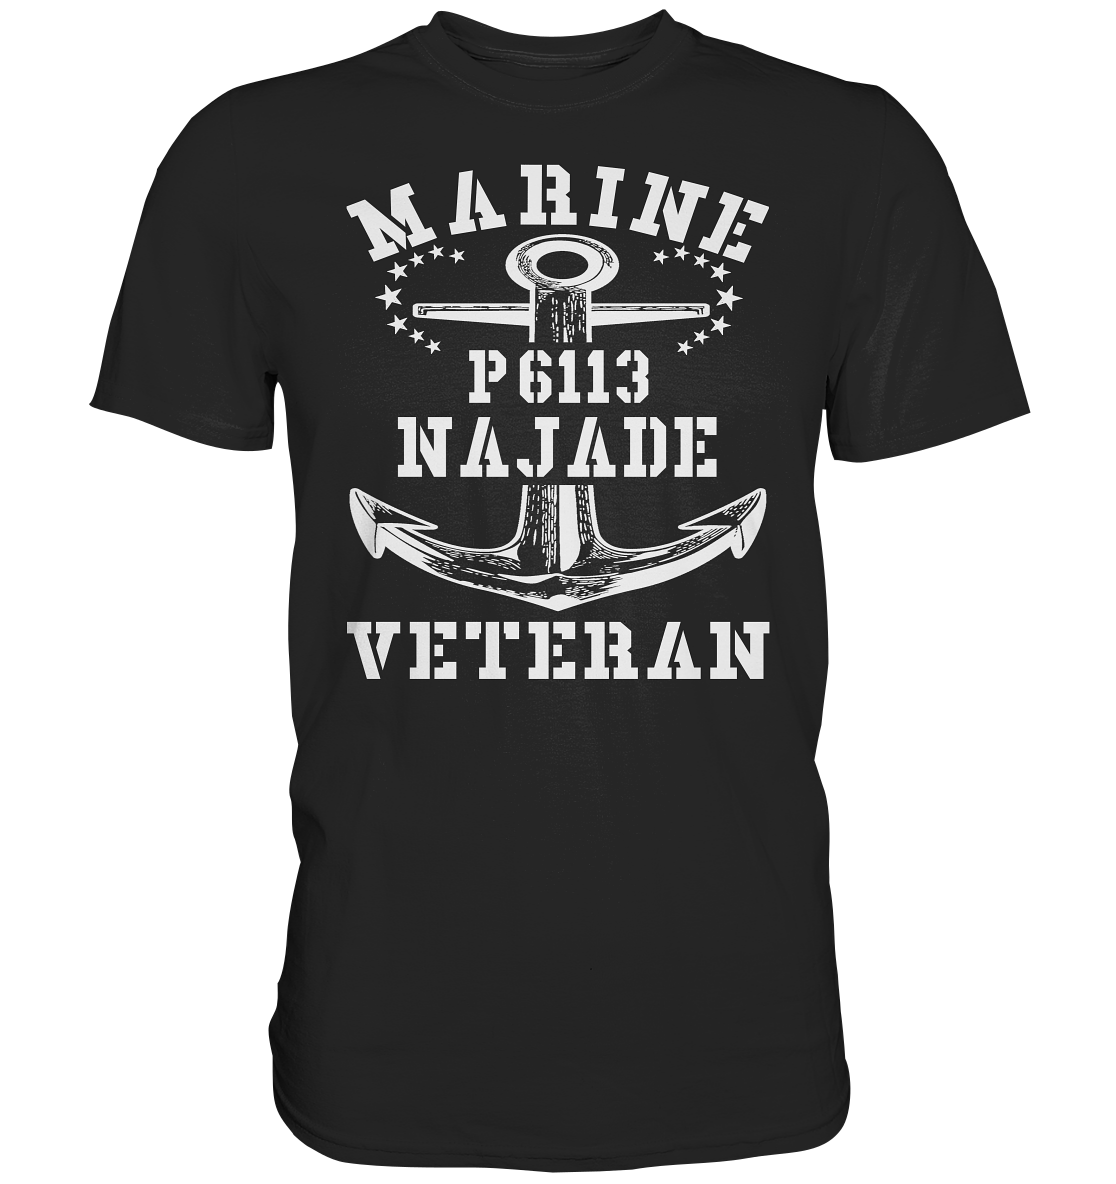 U-Jagdboot P6113 NAJADE Marine Veteran - Premium Shirt